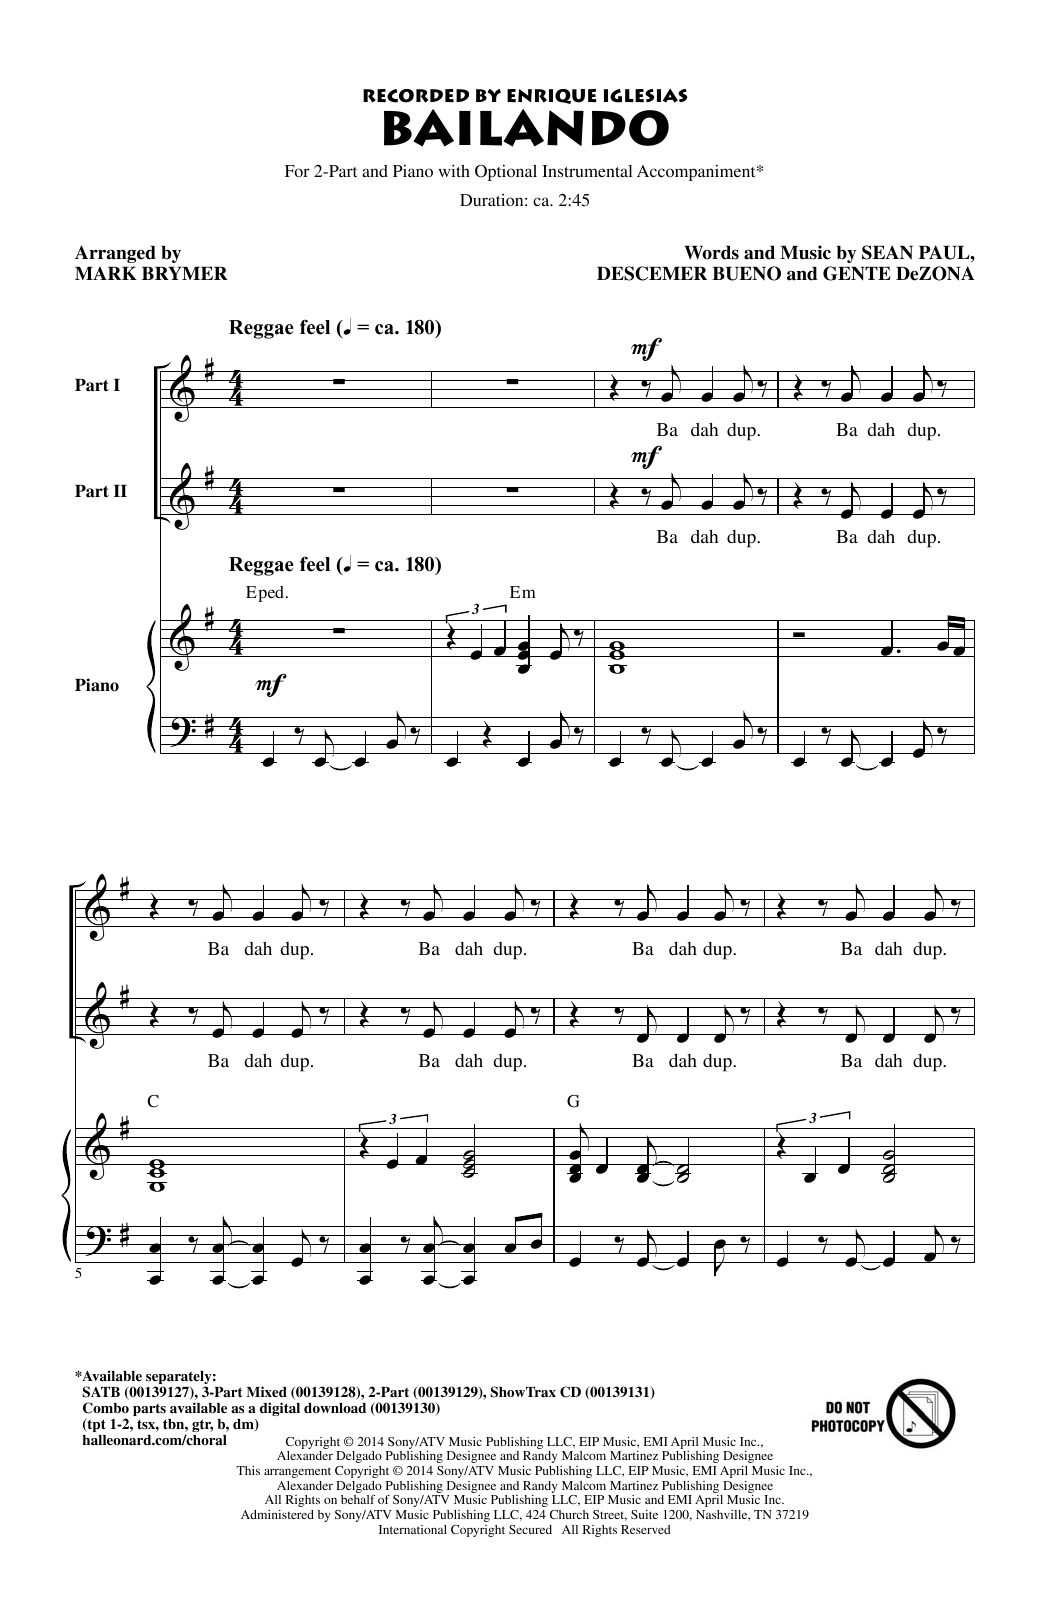 Enrique Iglesias Featuring Descemer Bueno and Gente de Zona Bailando (arr. Mark Brymer) Sheet Music Notes & Chords for SATB Choir - Download or Print PDF